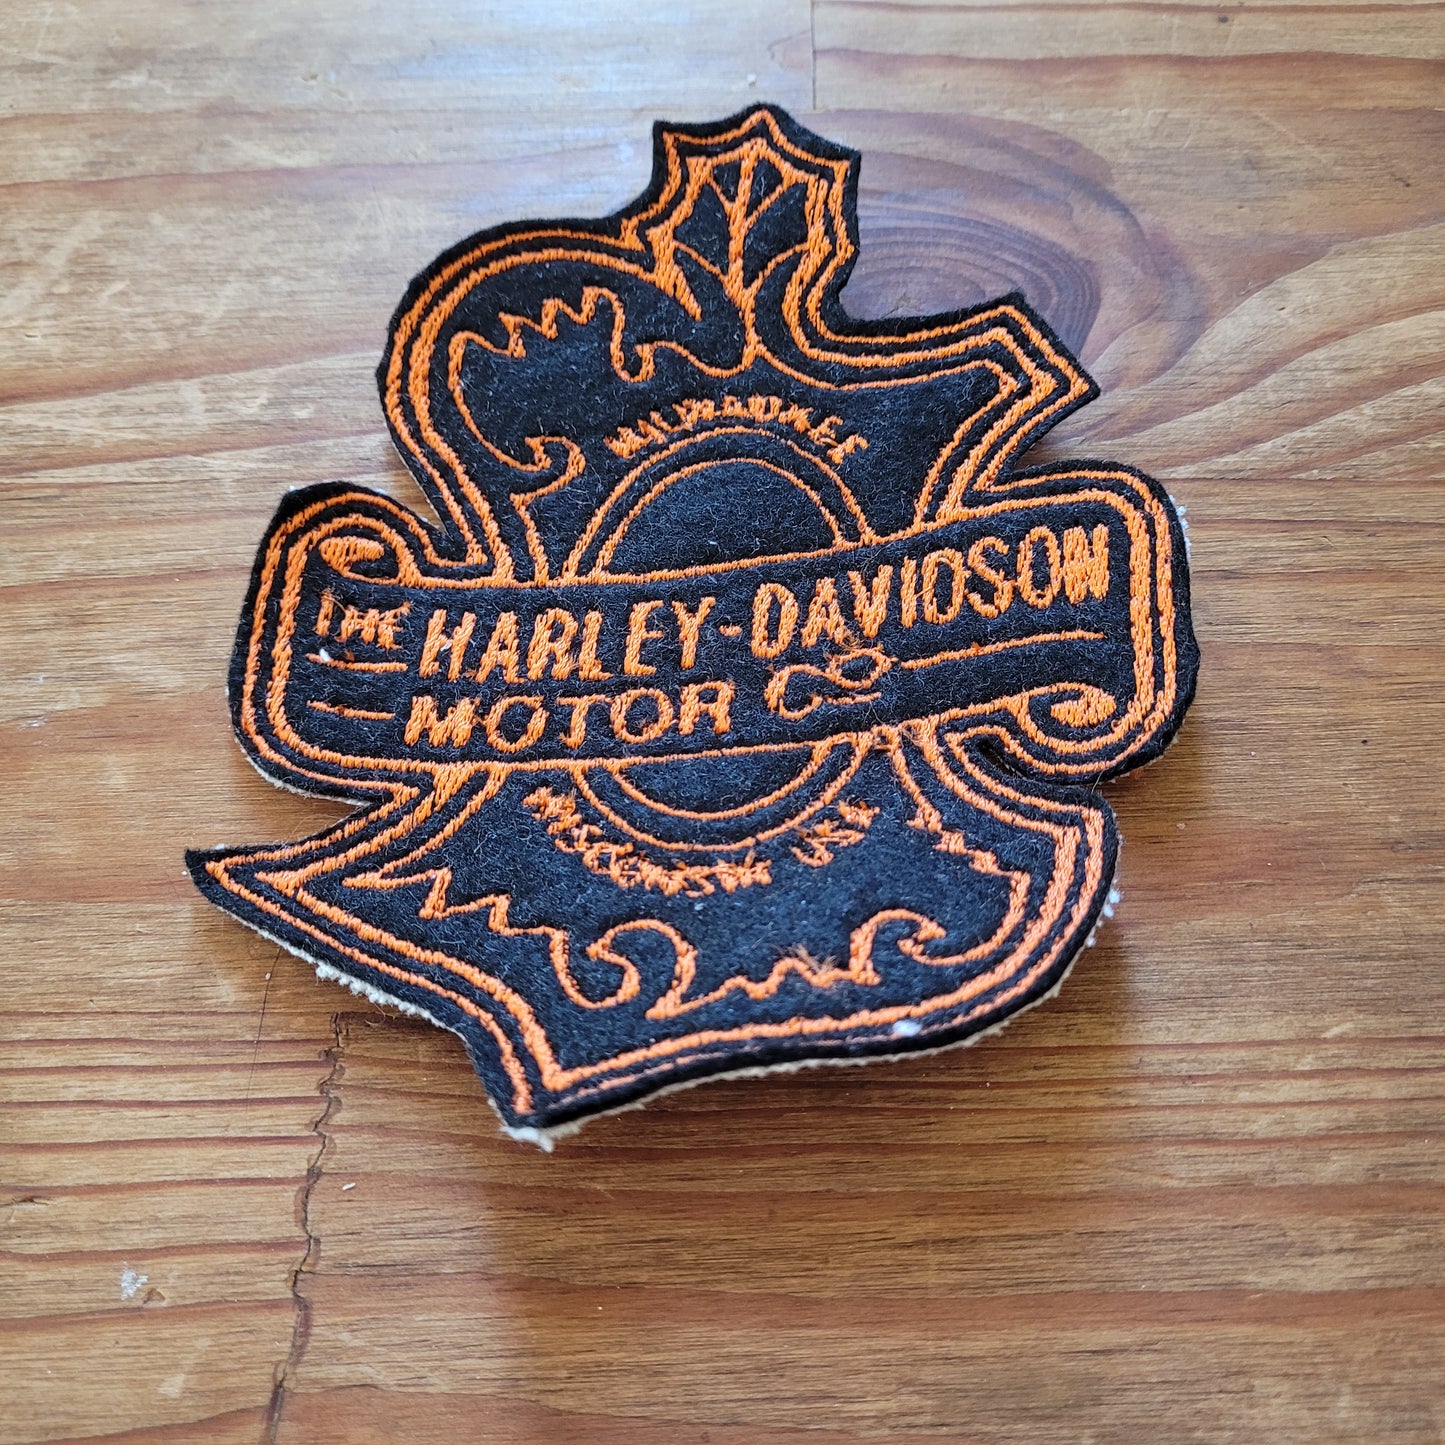 Vintage Harley logo